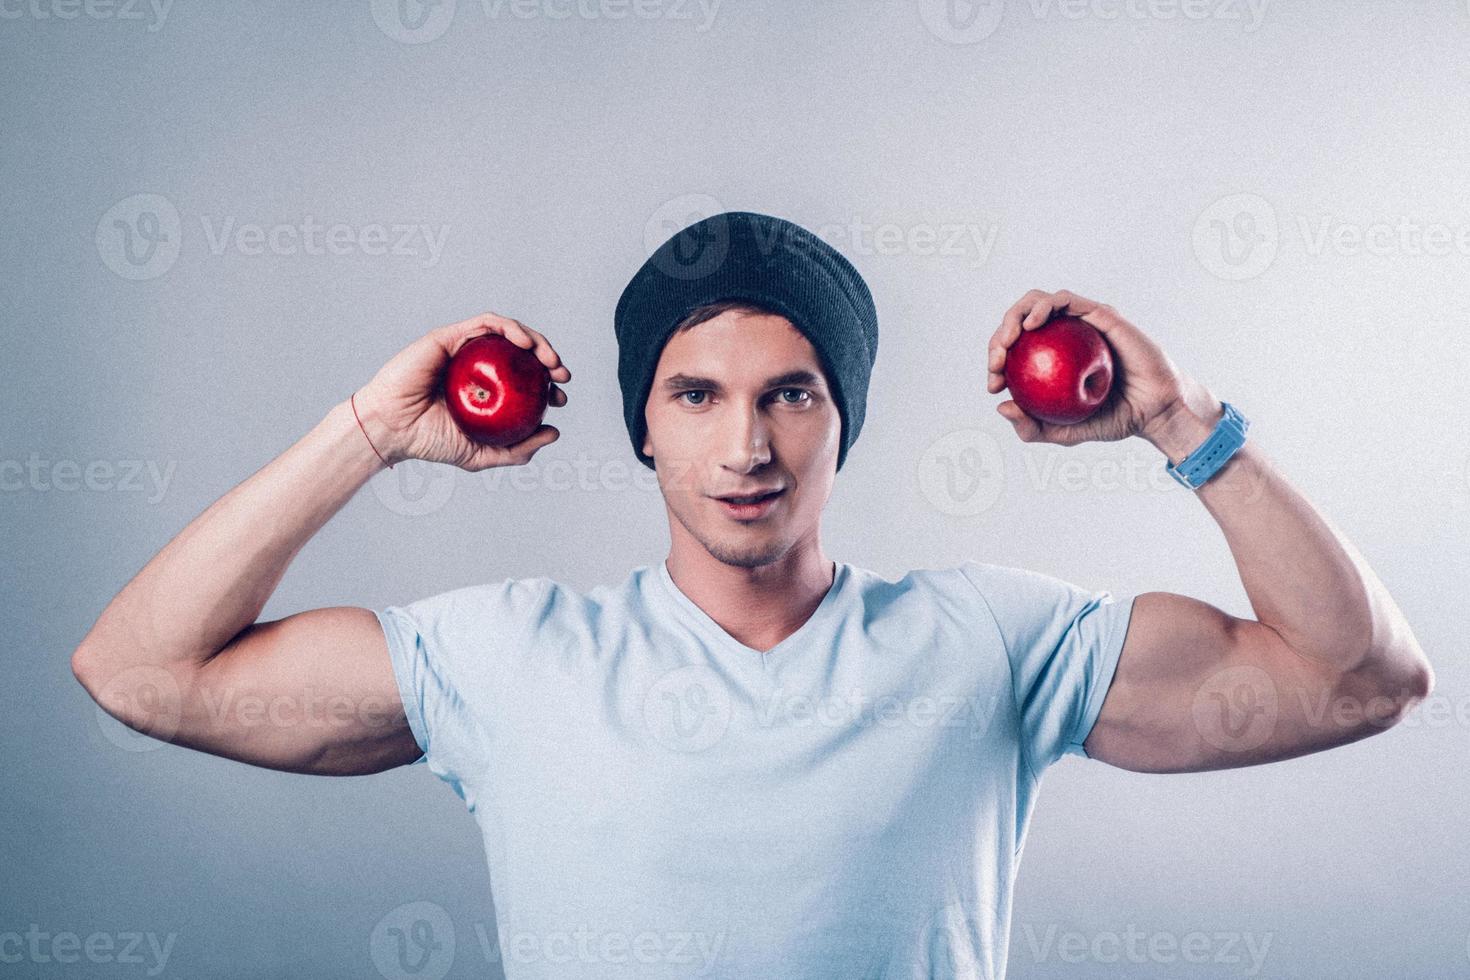 l'aspetto sportivo del giovane mostra i muscoli e tiene le mele nelle sue mani foto